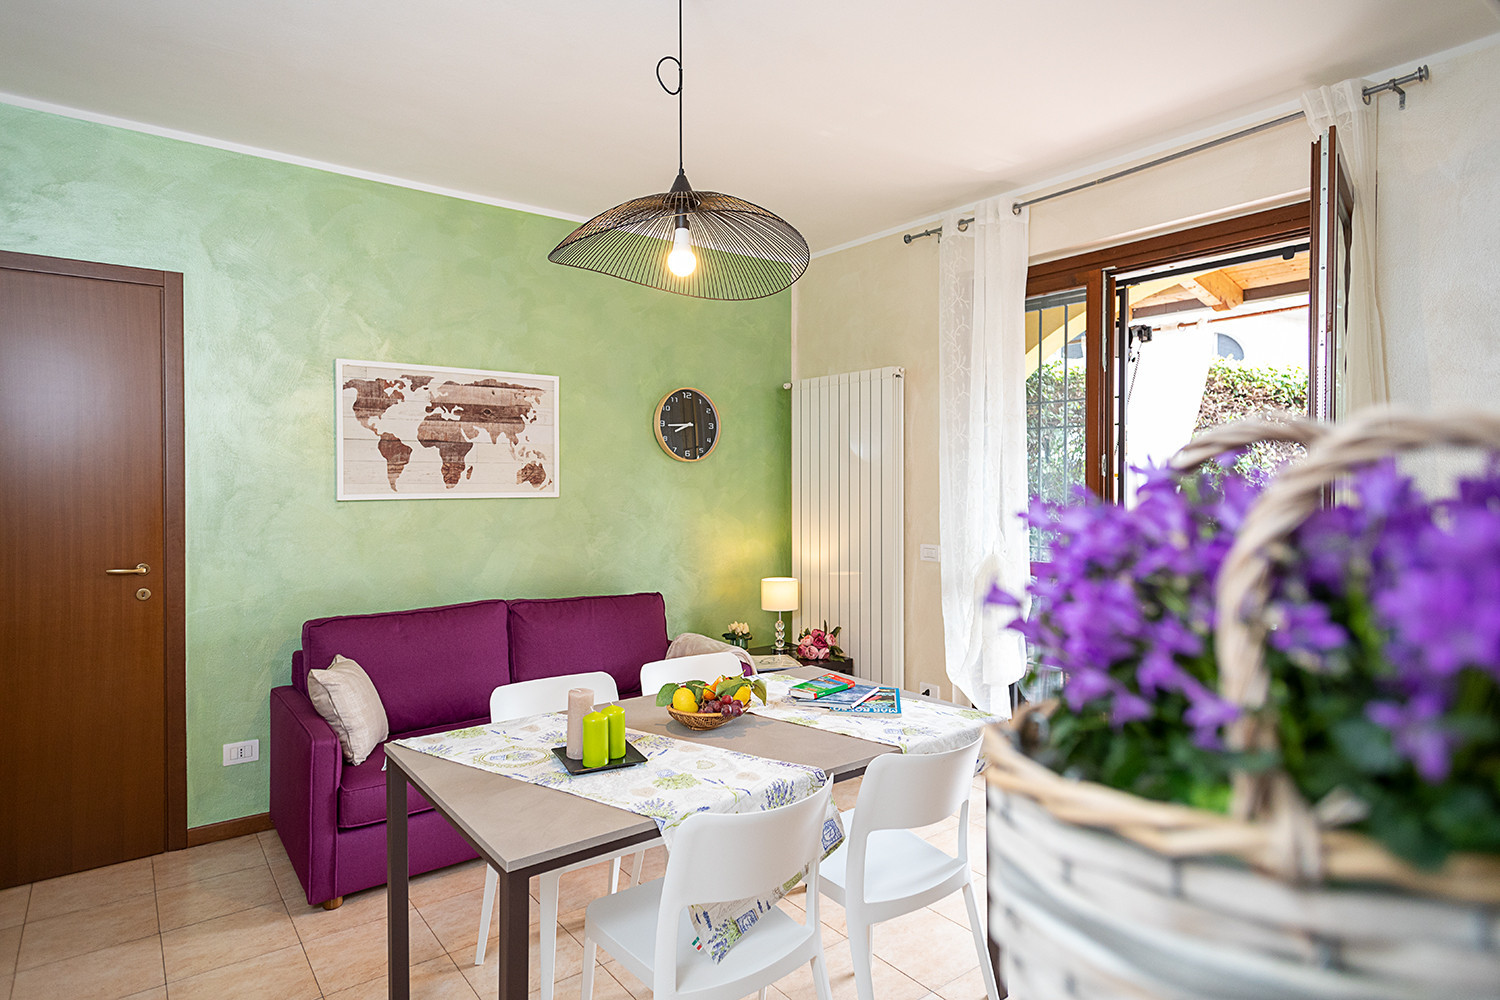  in Lazise - Regarda - cozy apartment L'Archetto with private garden, WiFi, pool